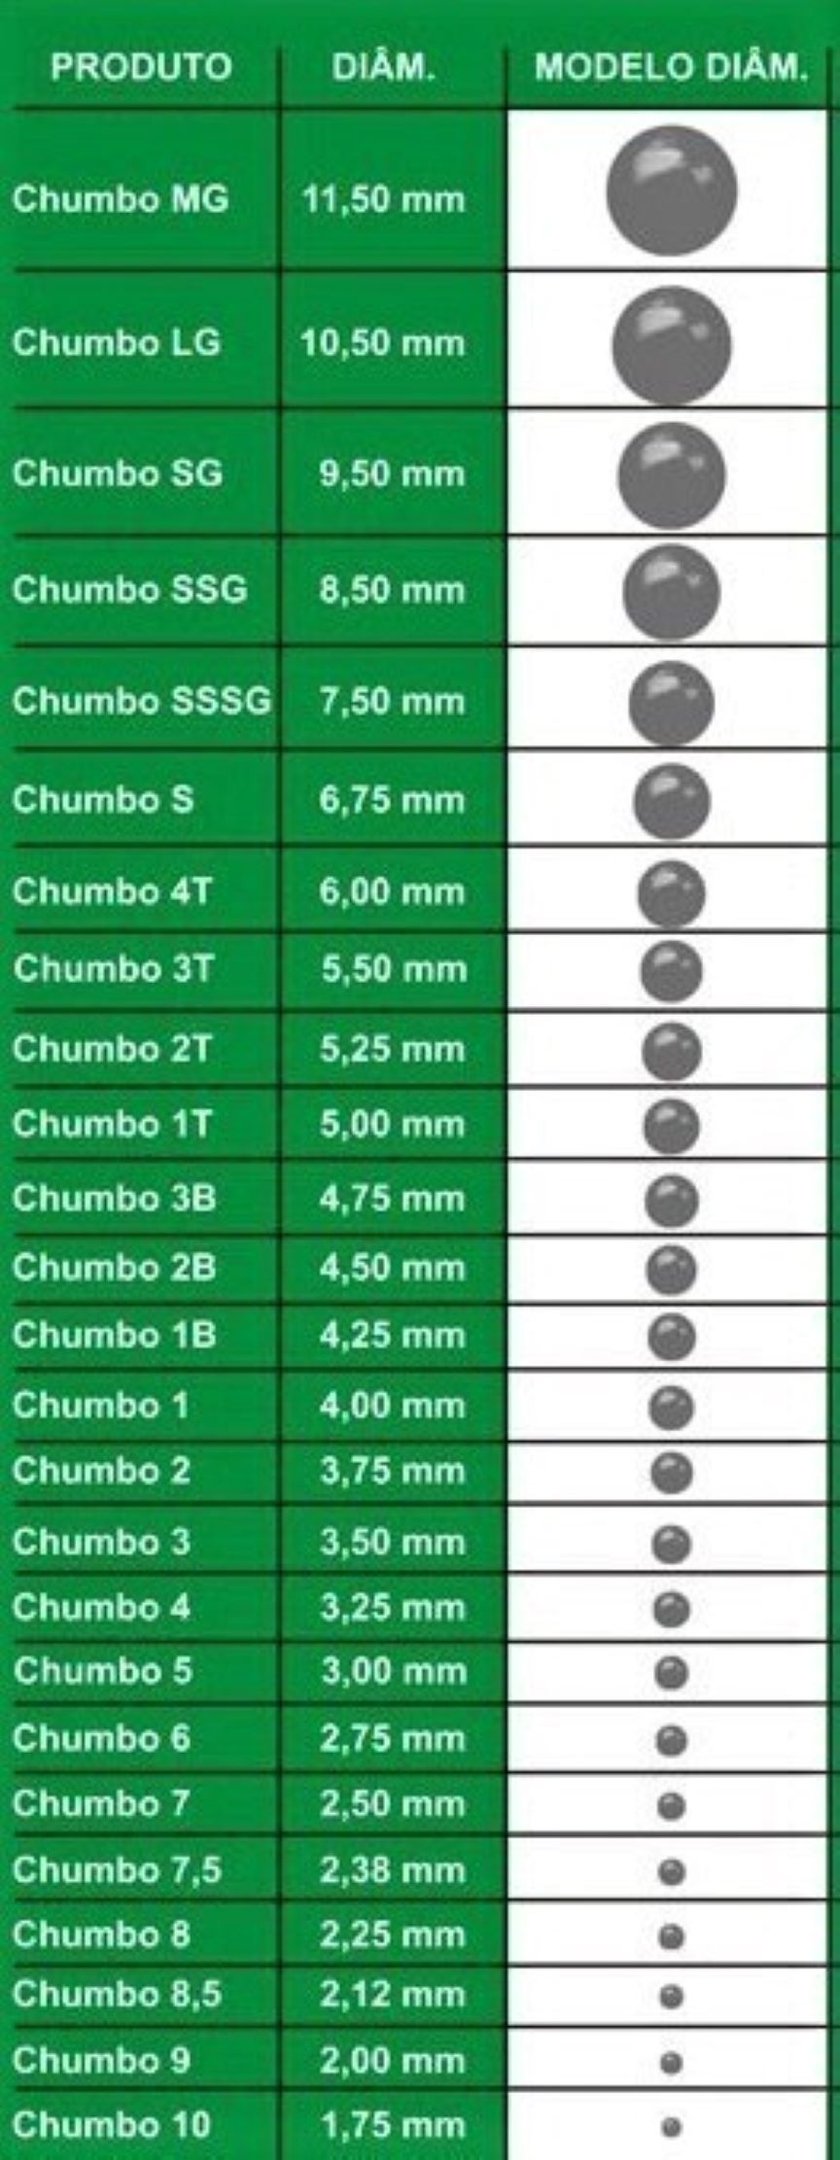 Chumbo esférico granulado número 7,5 com diâmetro de 2,38 mm - 6